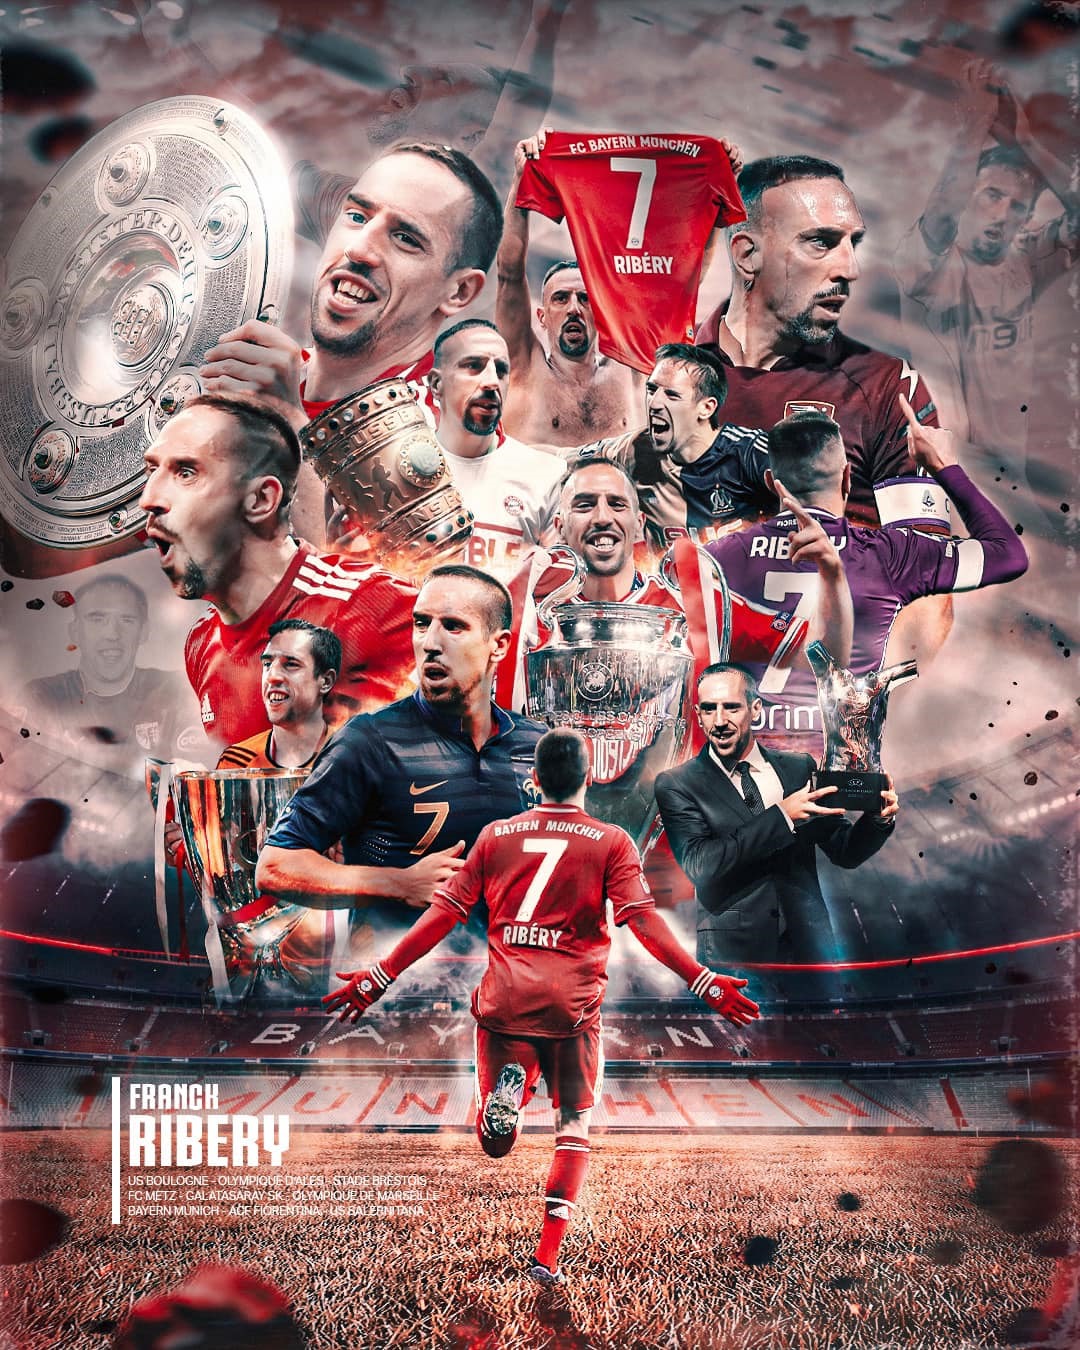 Ribery có sự nghiệp lẫy lừng. Ảnh: Frank Ribery